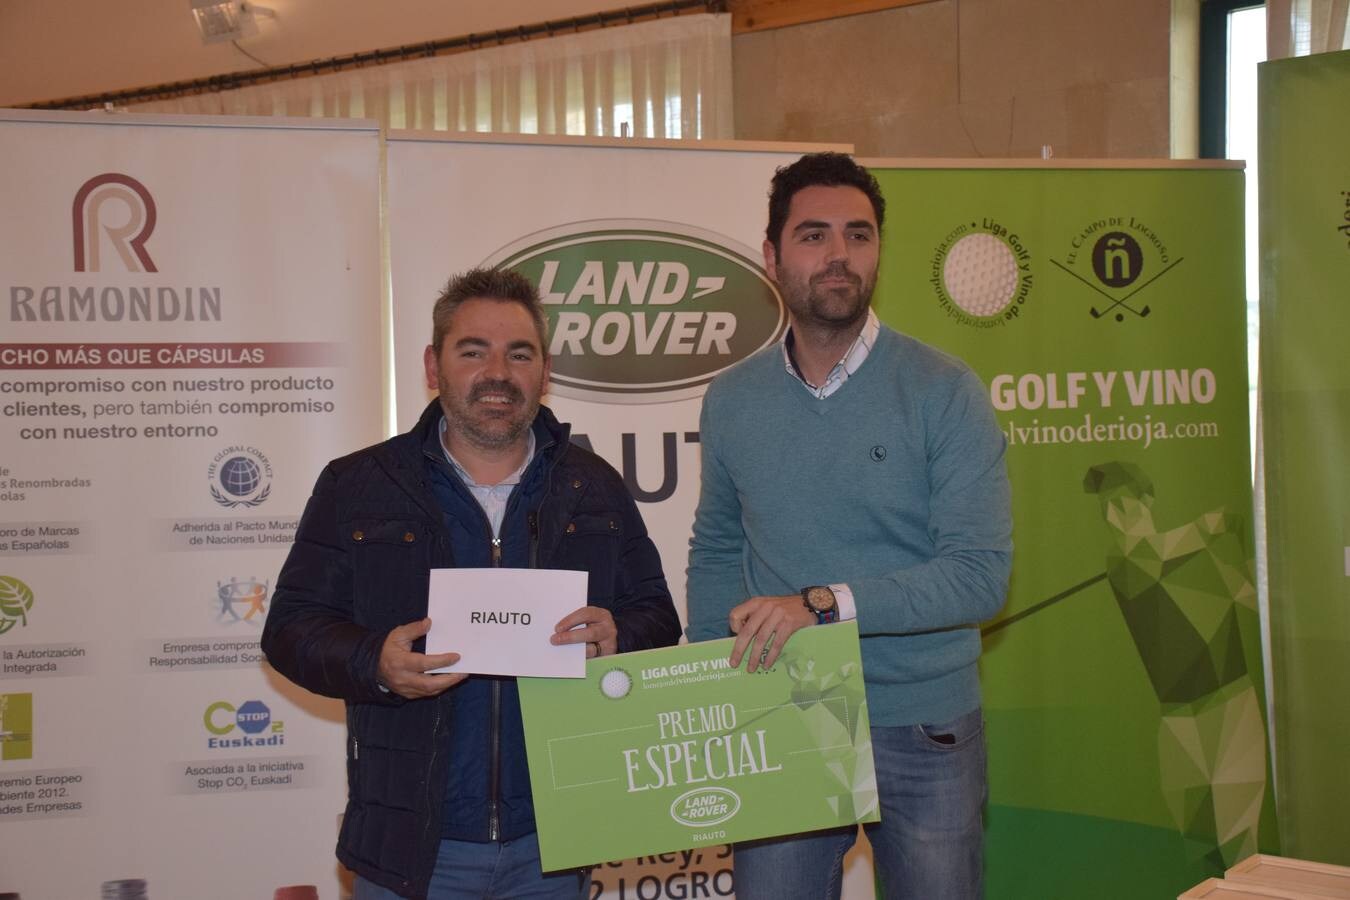 Los ganadores del tercer torneo de la Liga de Golf y Vino recibieron sus premios.